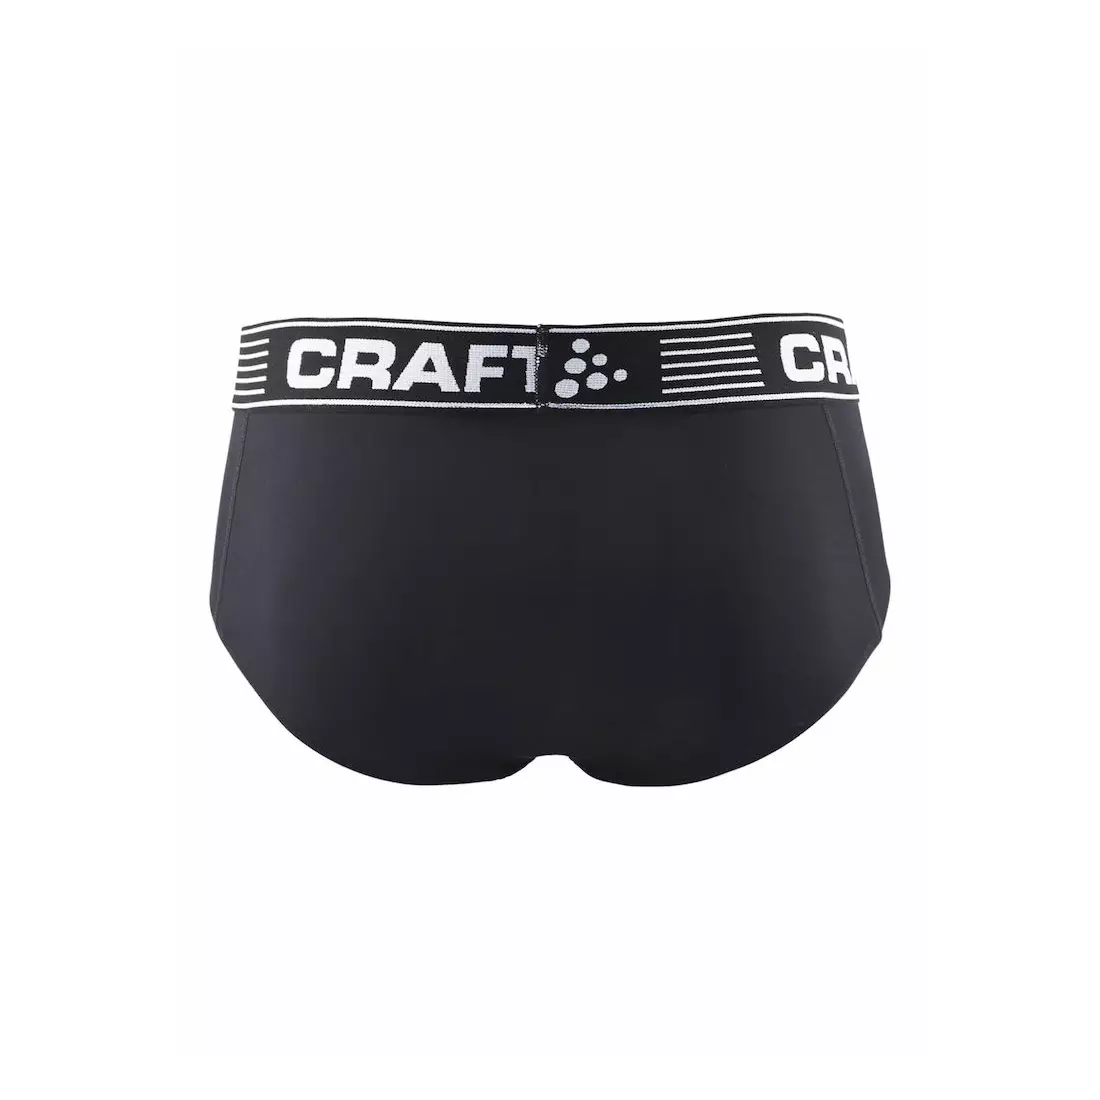 CRAFT BRIEF men's sports underwear 1904910-9900